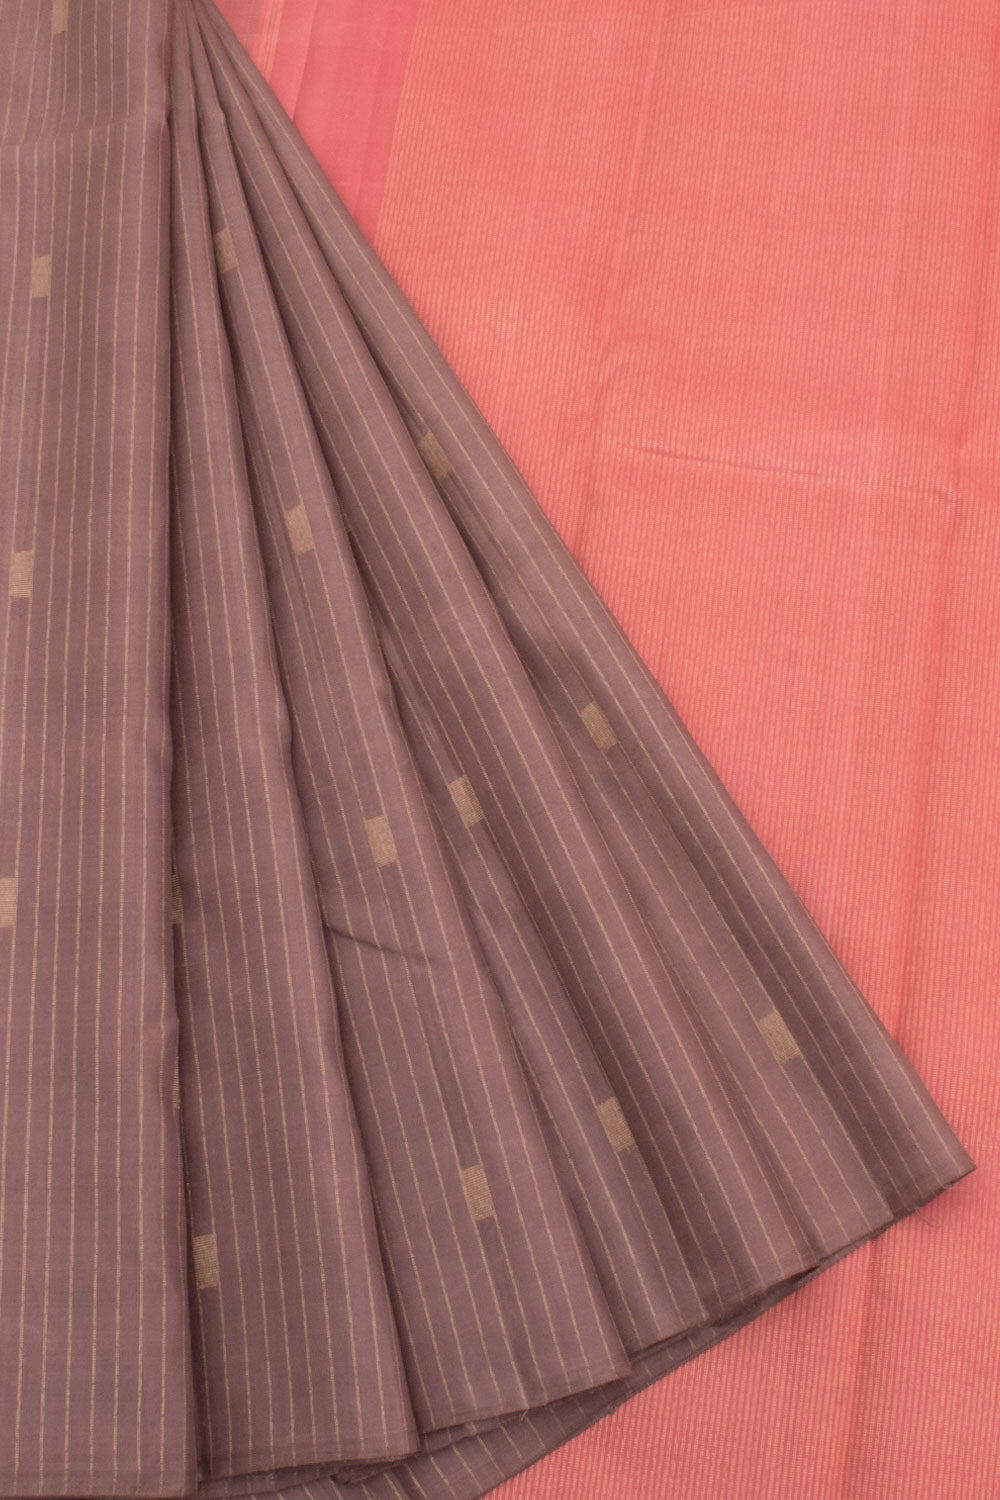 Handloom Pure Zari Borderless Kanjivaram Silk Saree with Zari Stripes Design